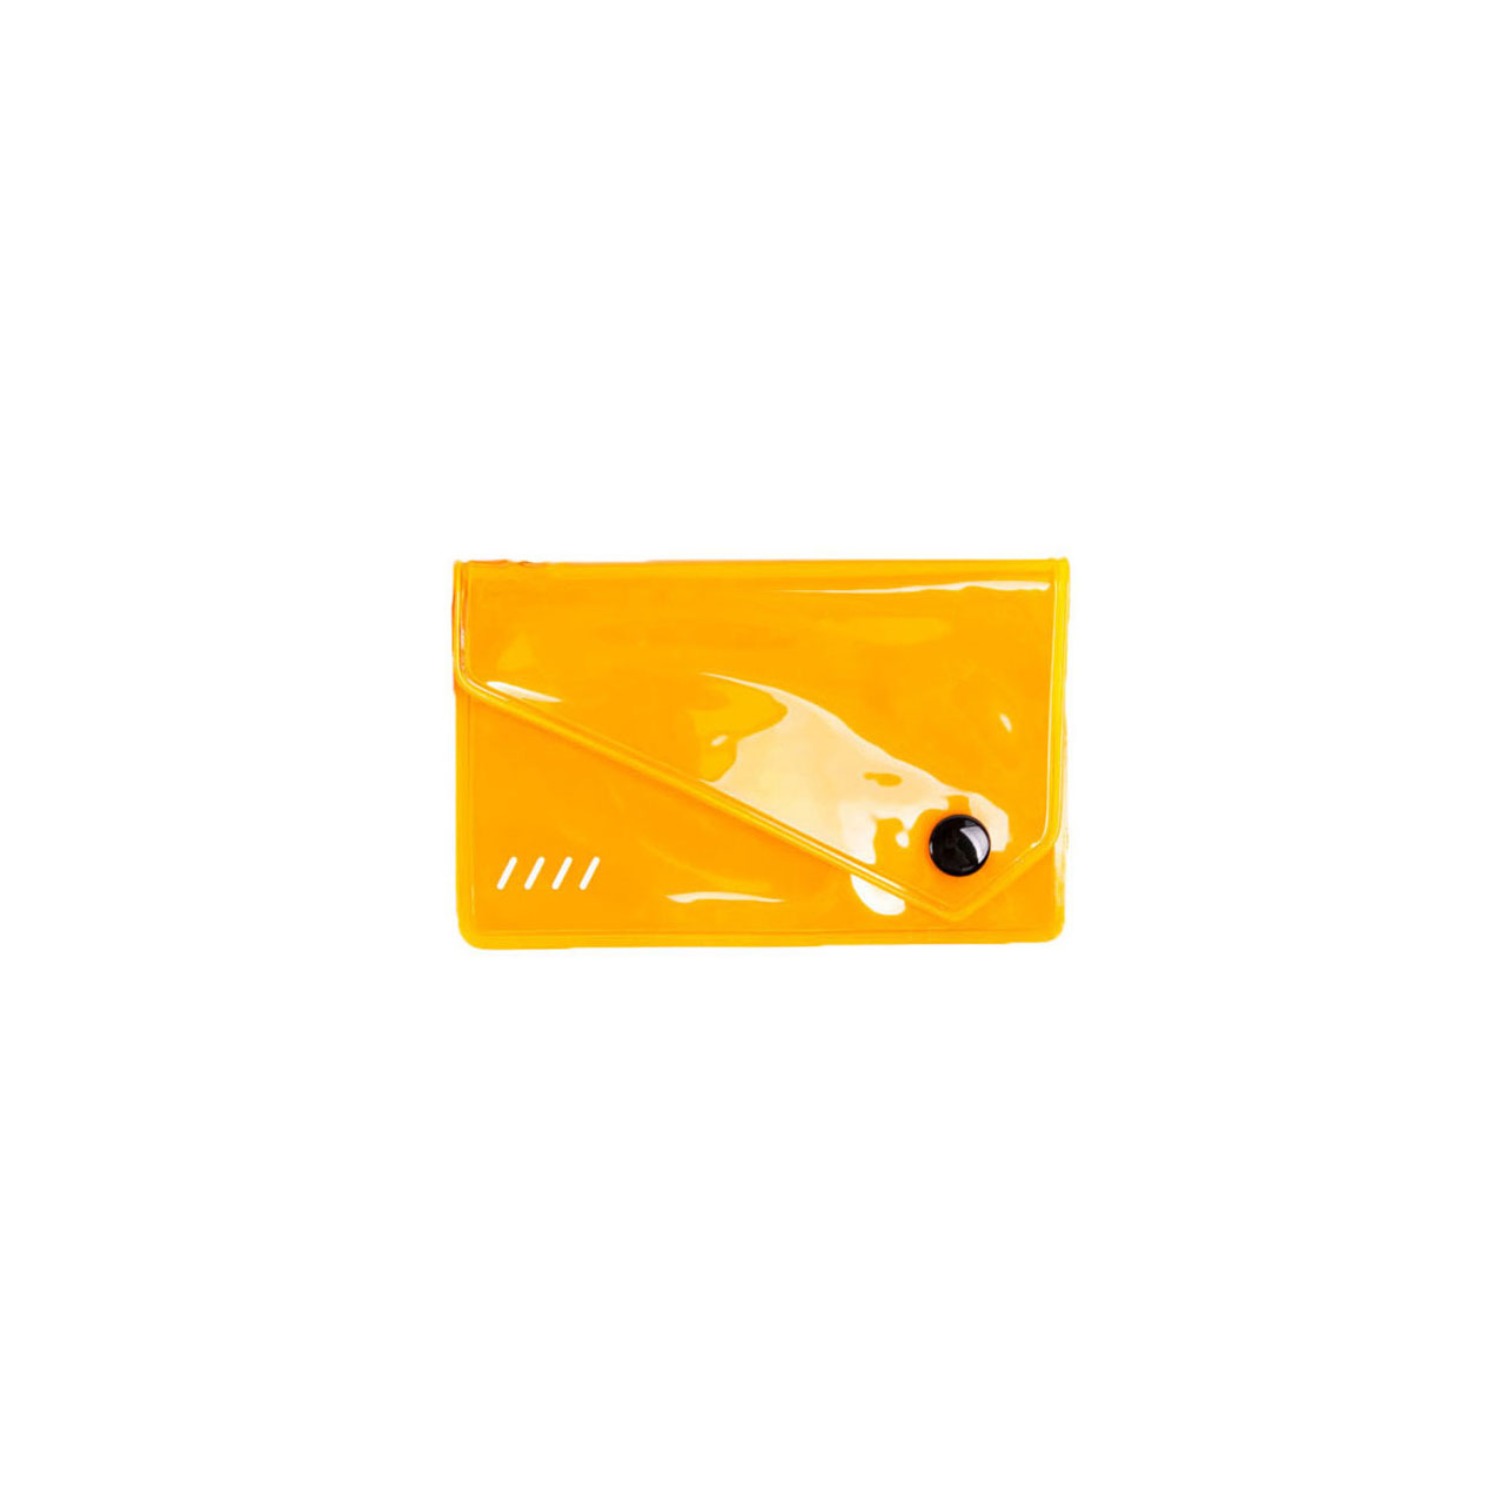 Reflector Card Holder Orange